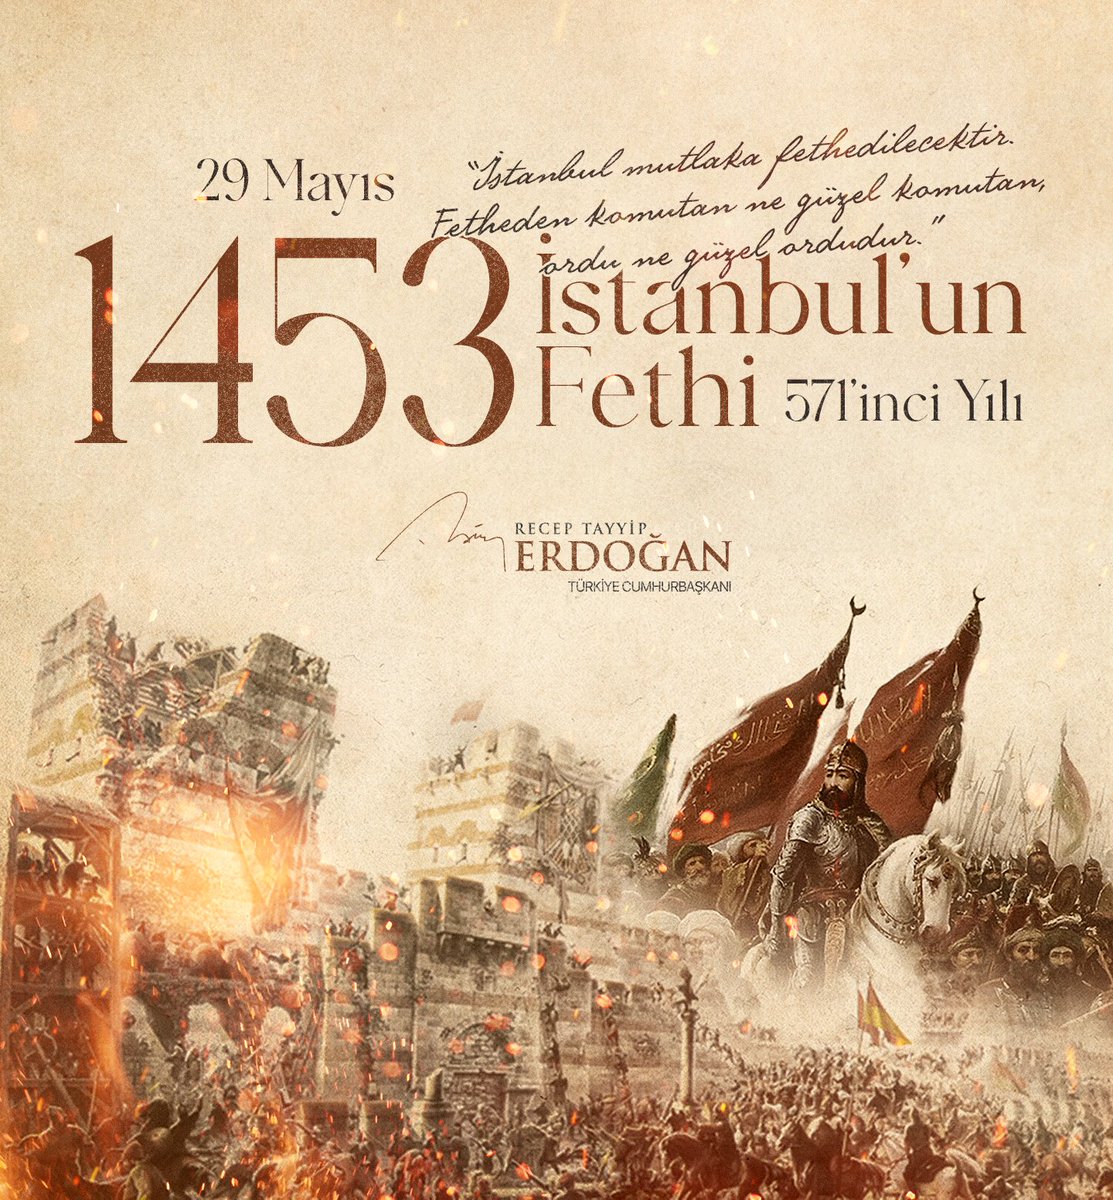 Dünya tarihinin ve tarihimizin muhteşem zaferlerinden biri olan #İstanbulunFethi’nin 571’inci yıl dönümünü tebrik ediyorum. • Eşsiz güzellikteki dünya şehrini bizlere miras bırakan #FatihSultanMehmet ve Aziz Şehitlerimizi Rahmetle, hürmetle ve minnetle yâd ediyorum.